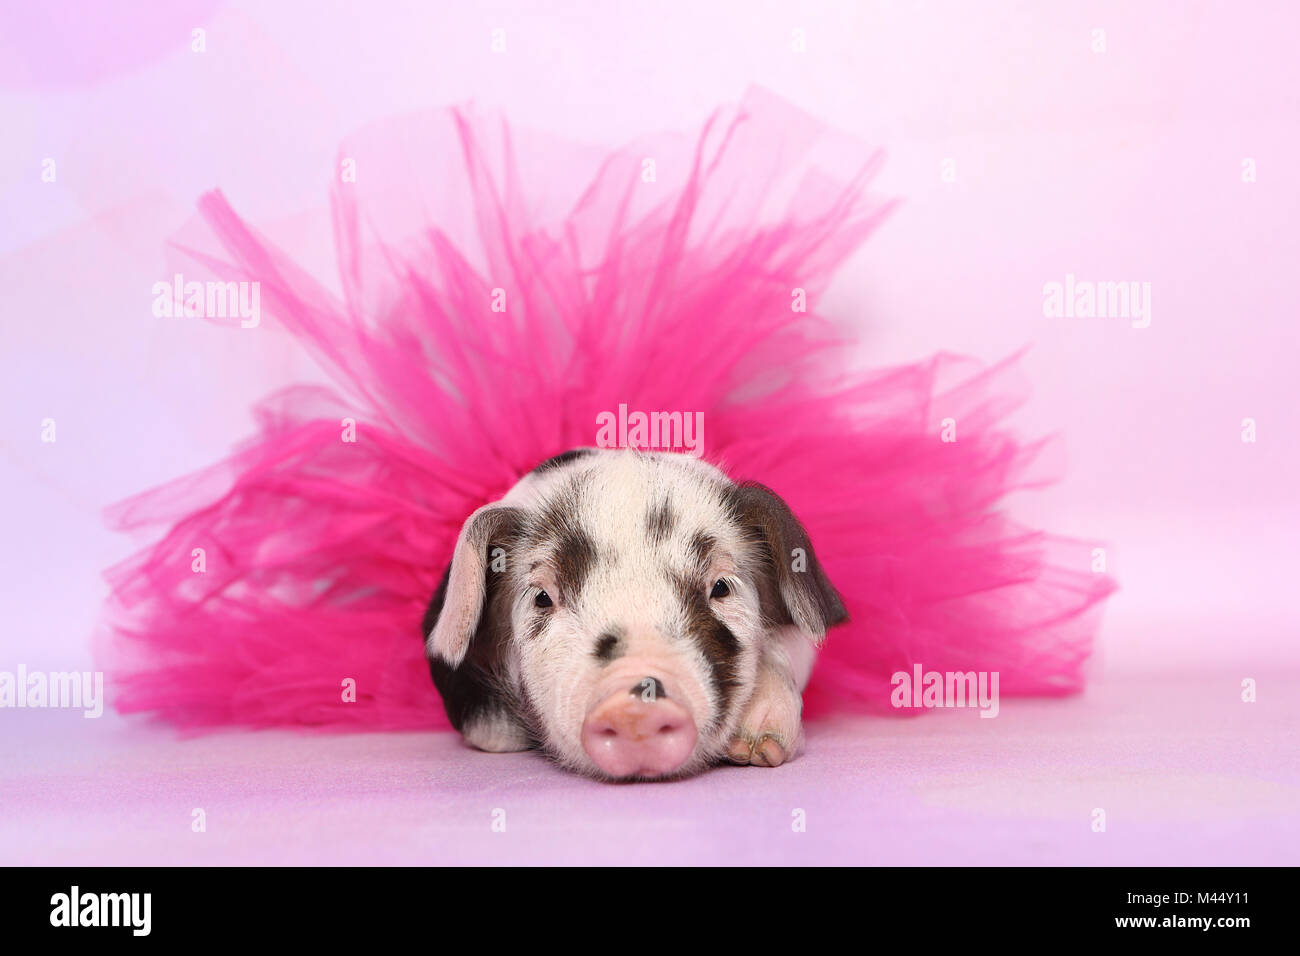 Porc domestique, Turopolje x ?. Porcinet (4 semaines) vêtu d'un tutu rose, le mensonge. Studio photo sur un fond rose. Allemagne Banque D'Images